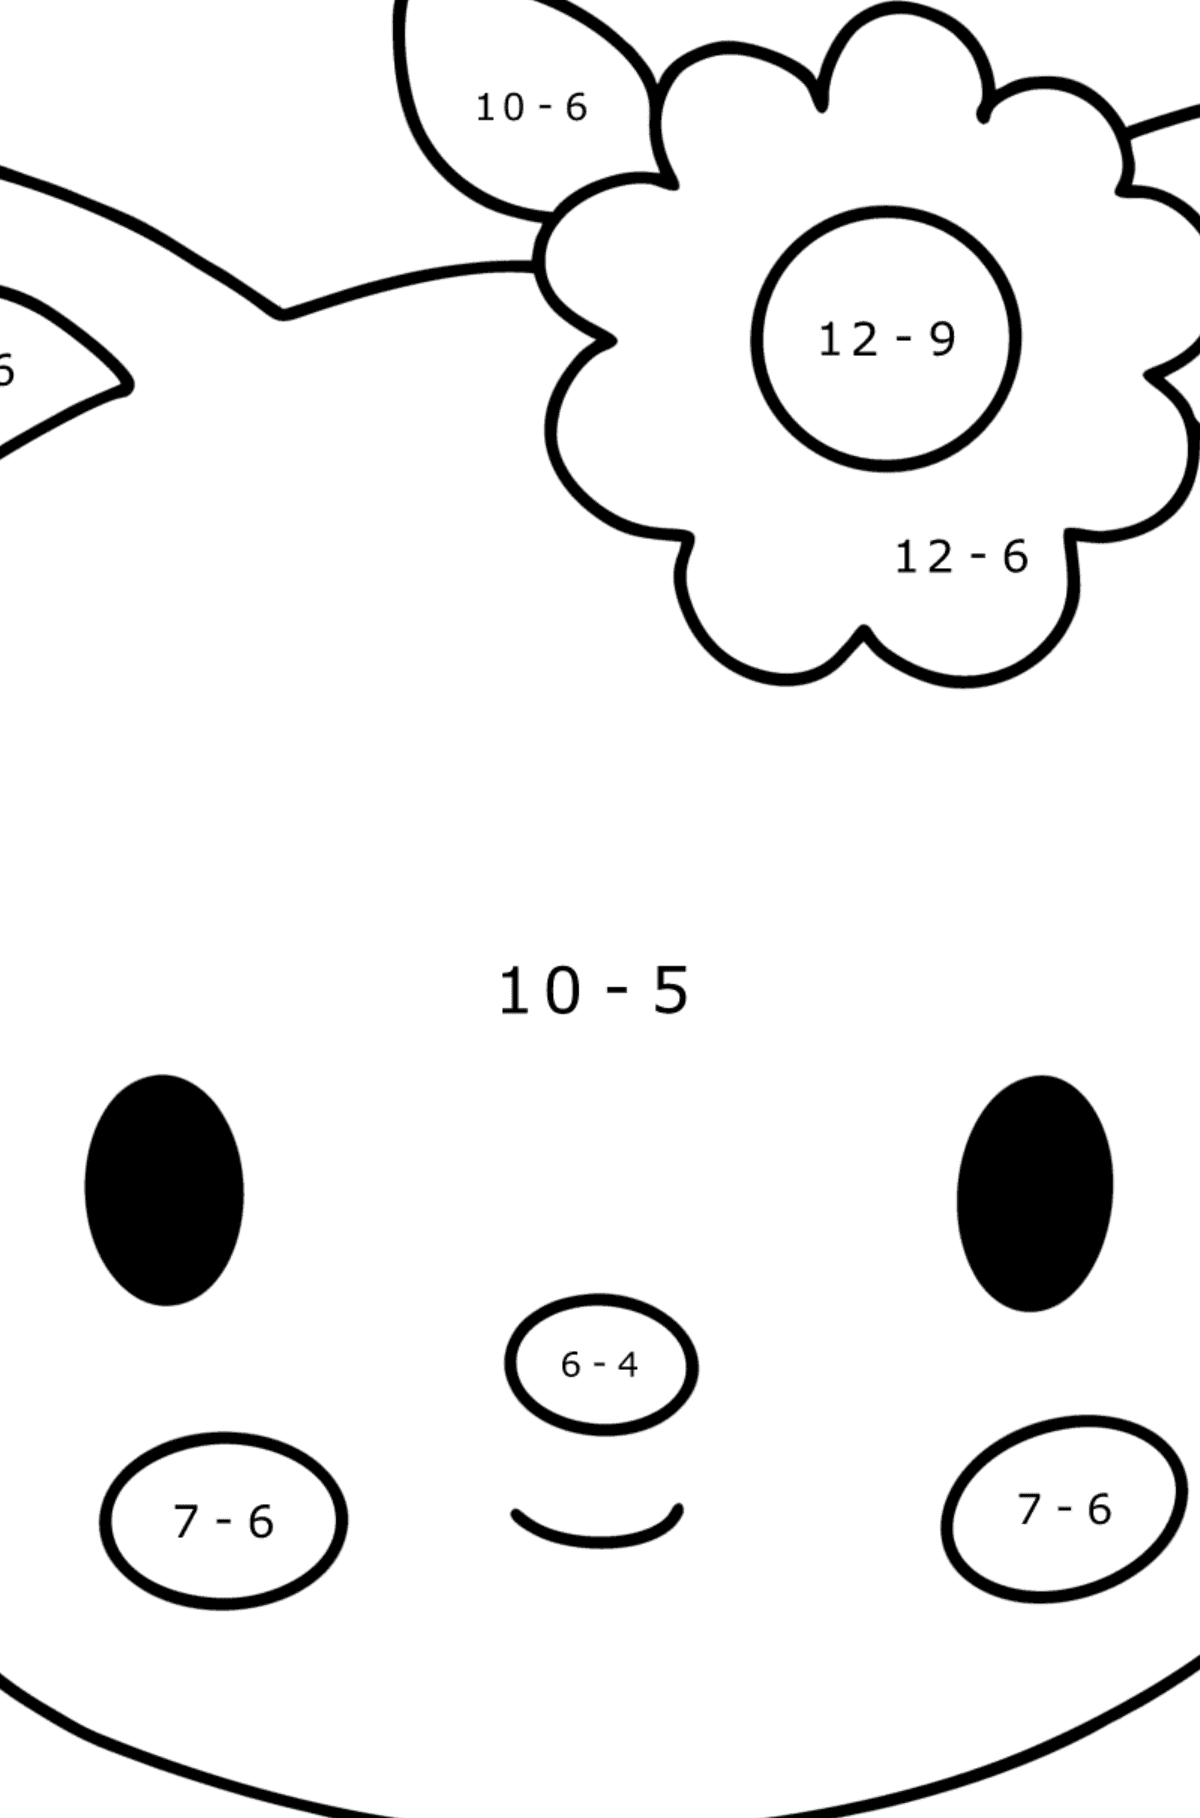 Desenho para colorir de focinho Hello Kitty - Colorindo com Matemática - Subtração para Crianças